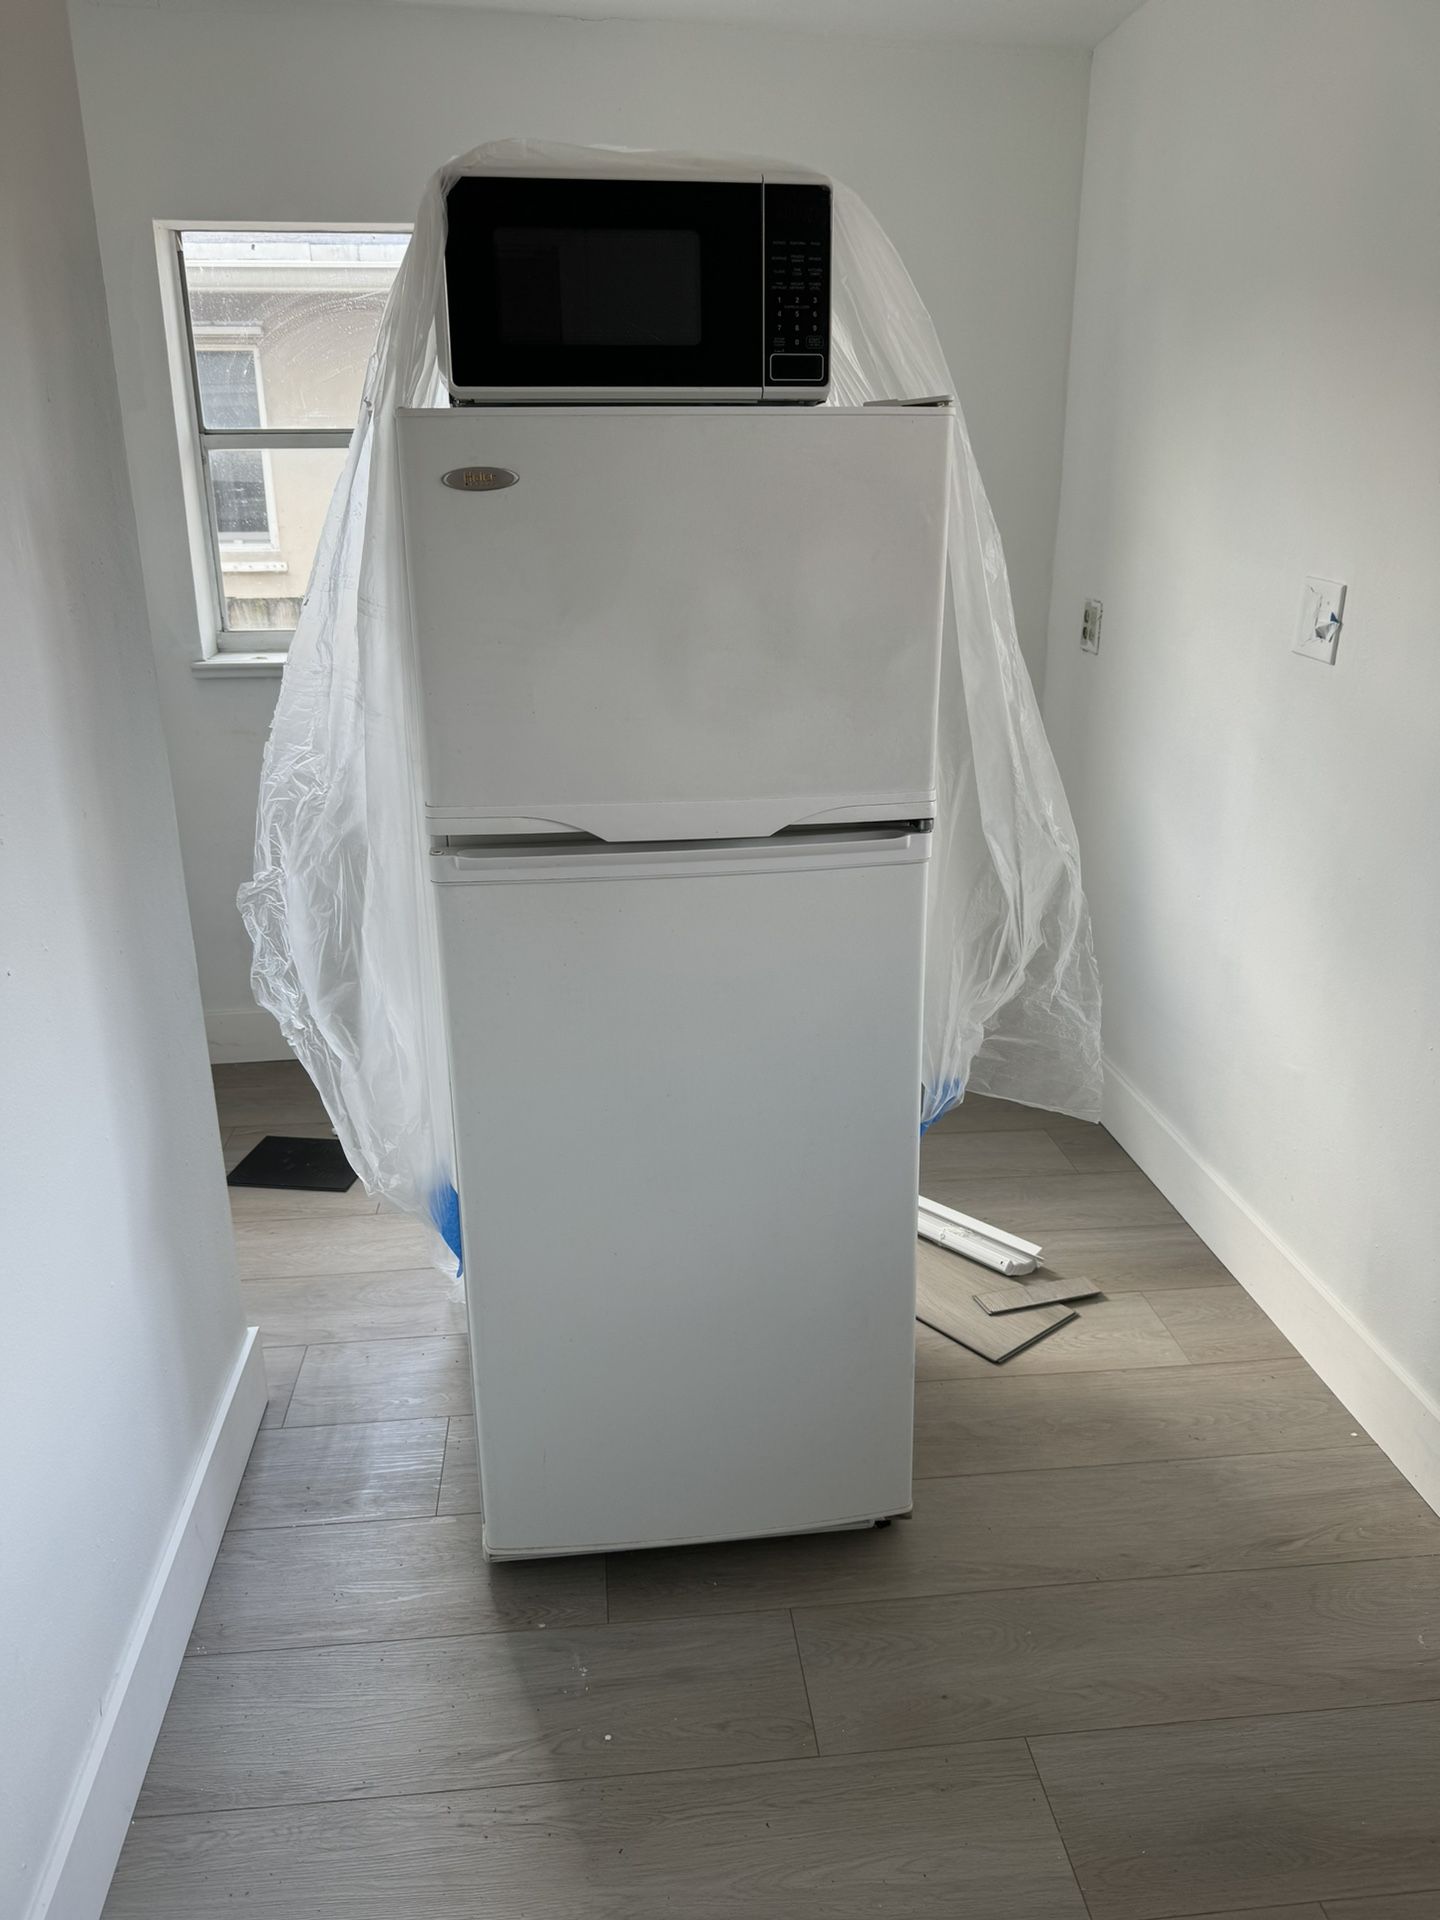 Fridge Refrigerator Refrigerador 